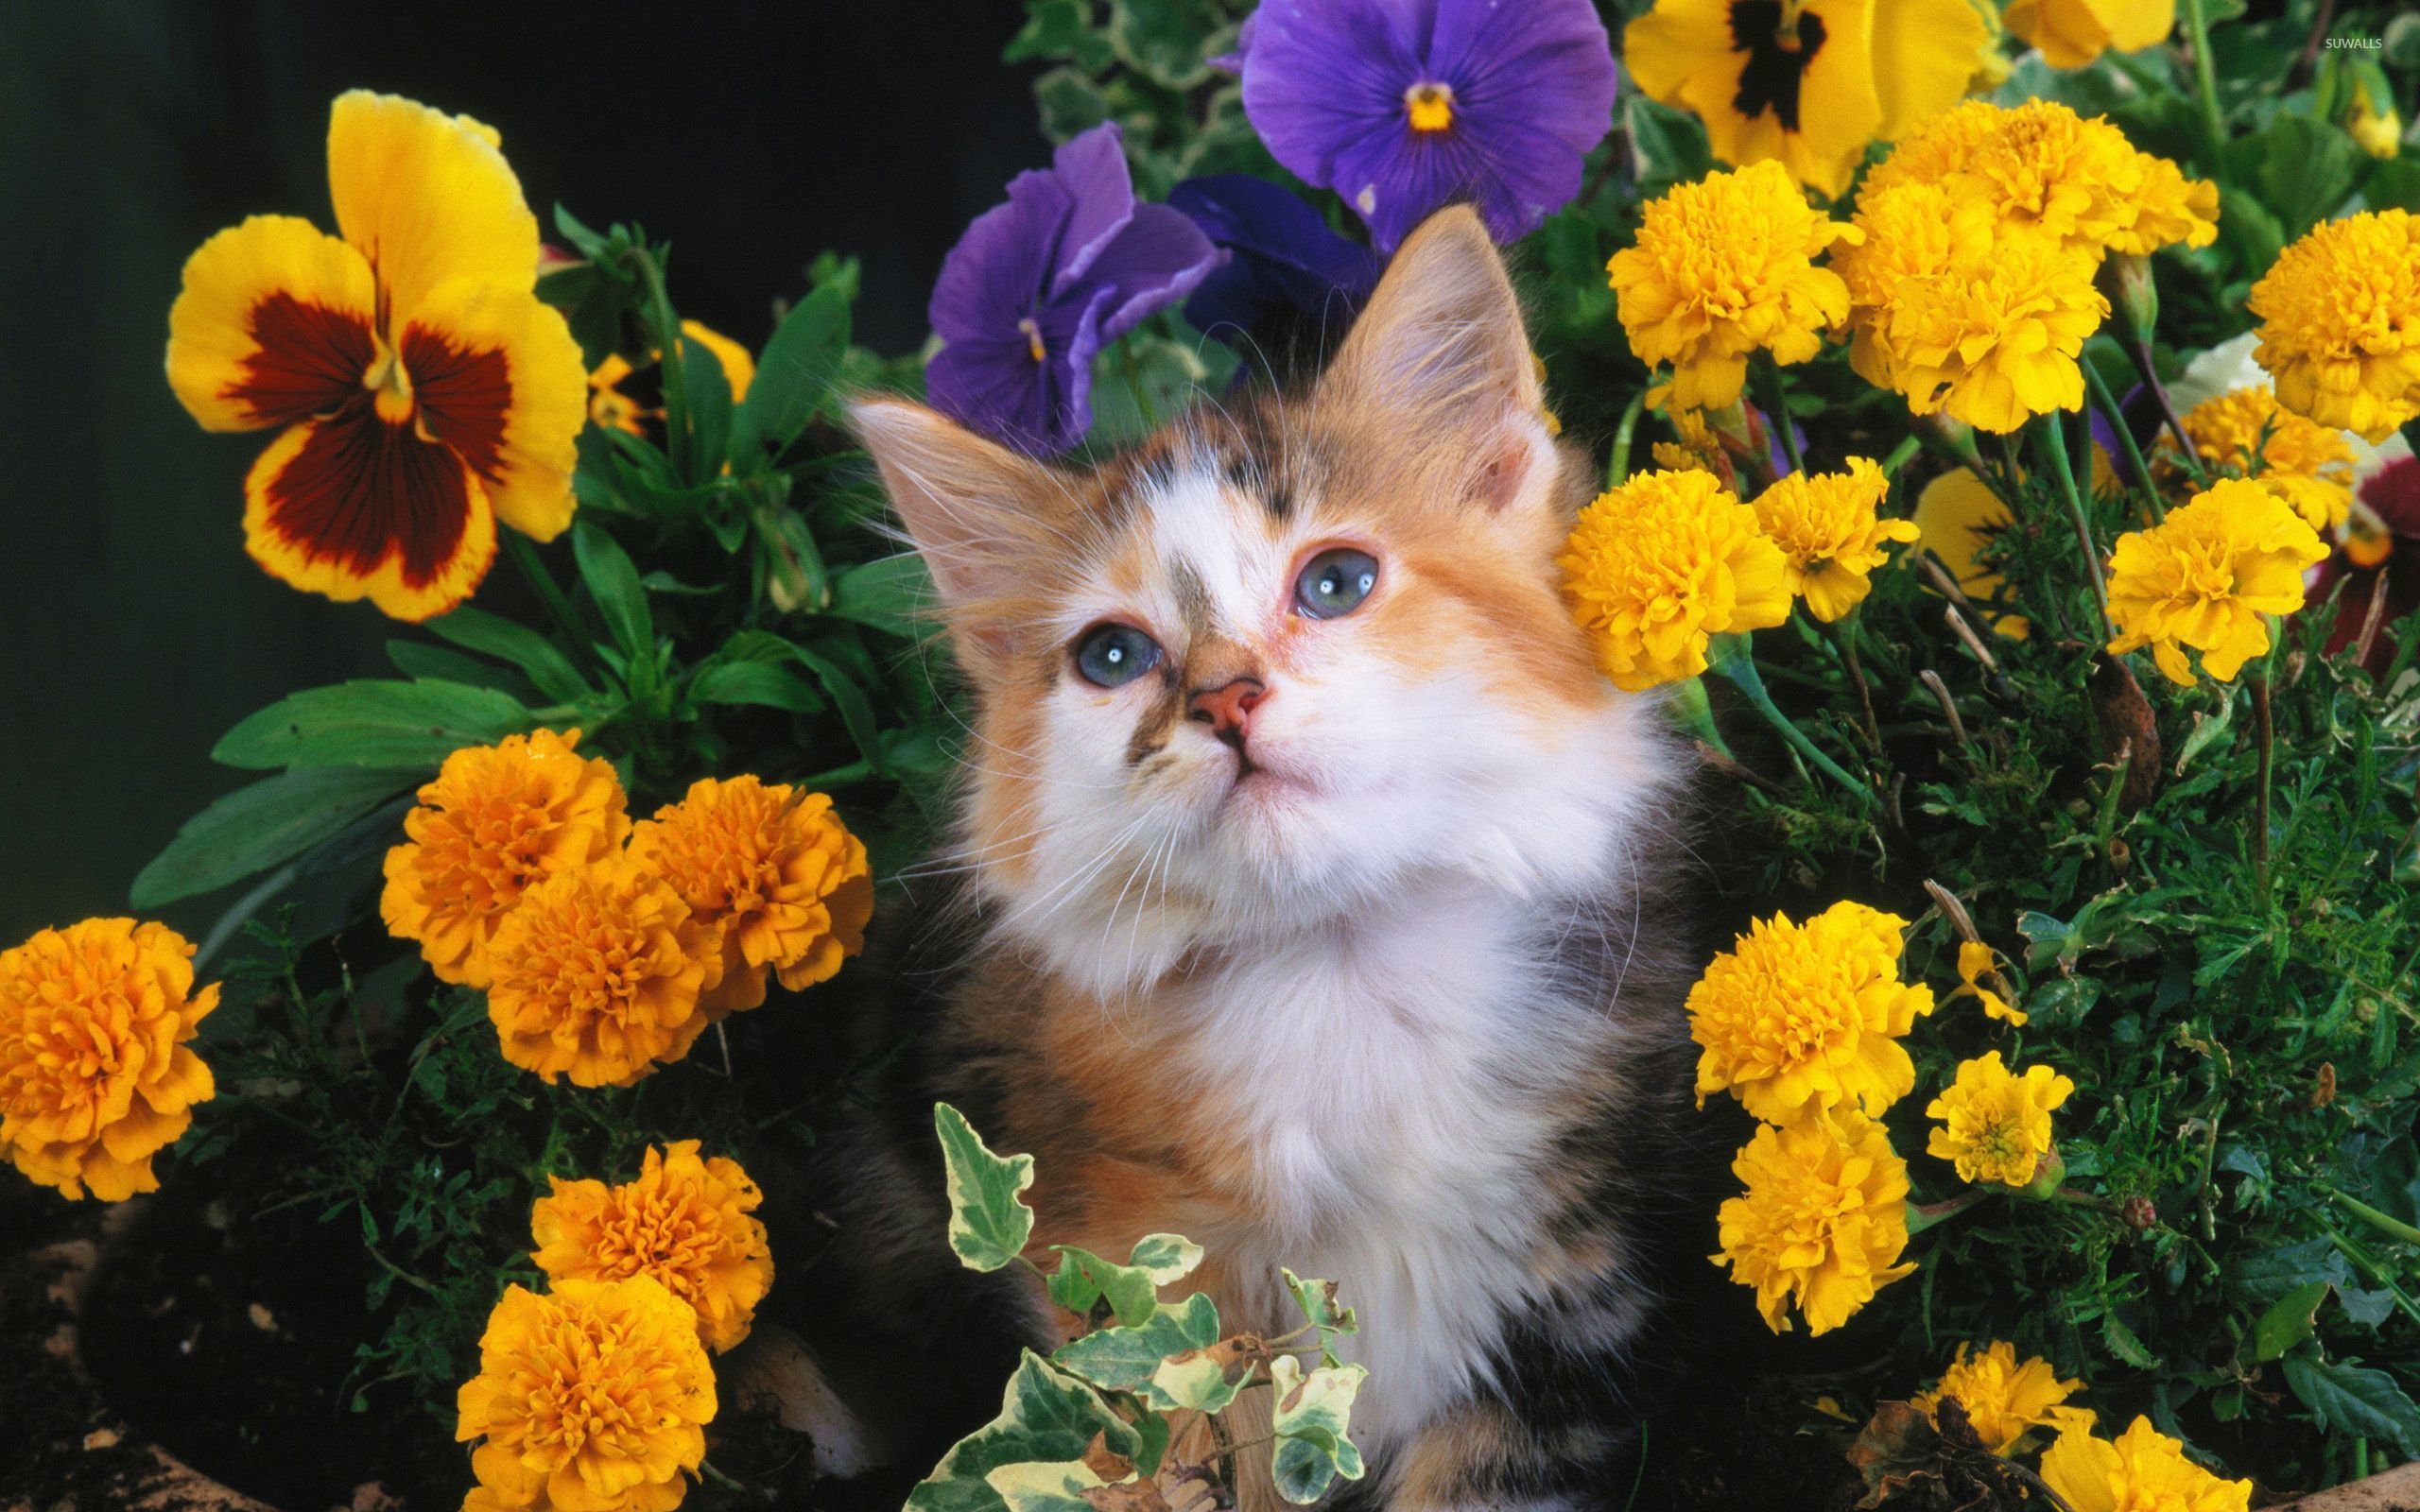 Cat between flowers wallpaper Animal wallpapers 46999